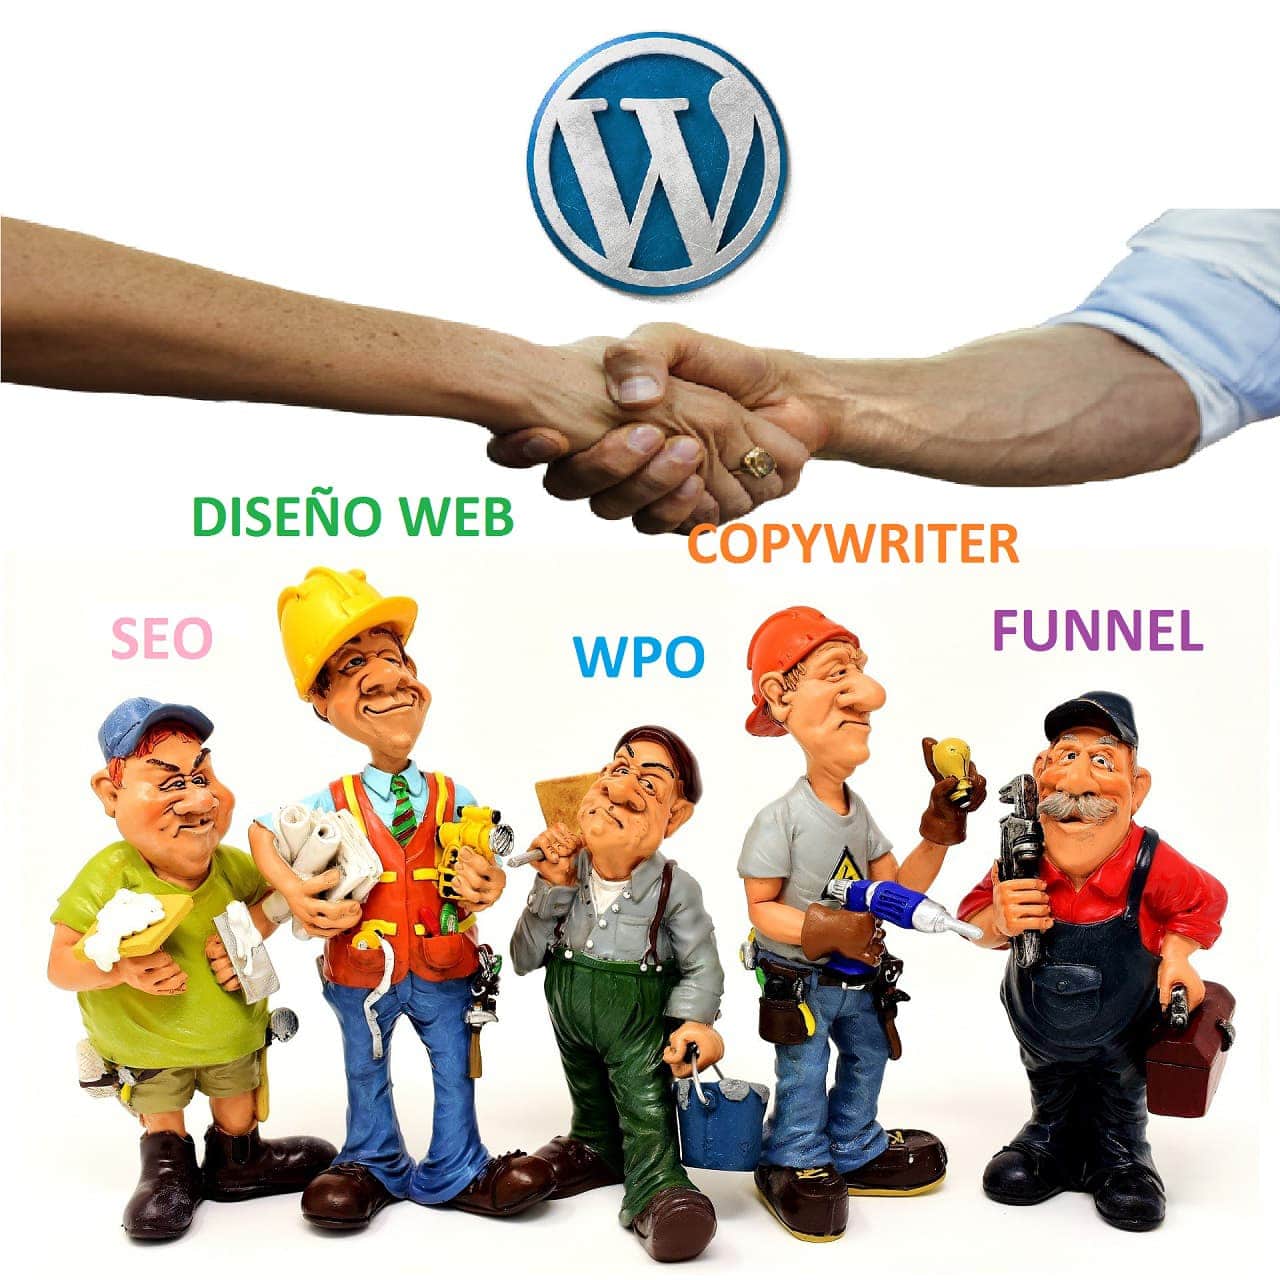 servicios wordpress